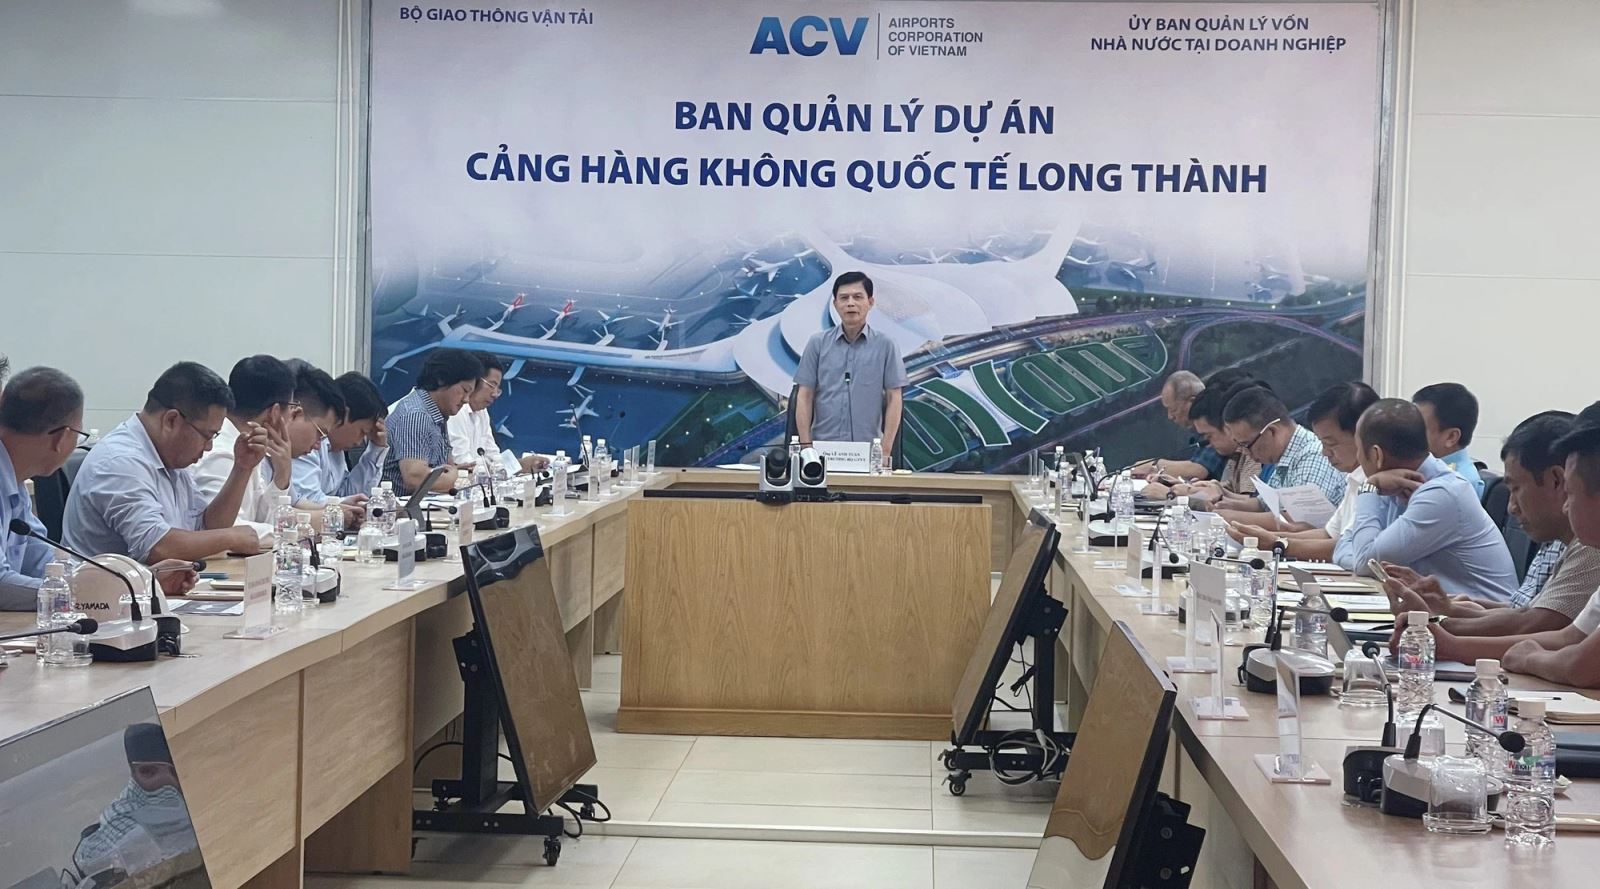 Thứ trưởng Lê Anh Tuấn yêu cầu các đơn vị liên quan tăng tốc, đẩy nhanh tiến độ các dự án thành phần khi kiểm tra dự án sân bay Long Thành.